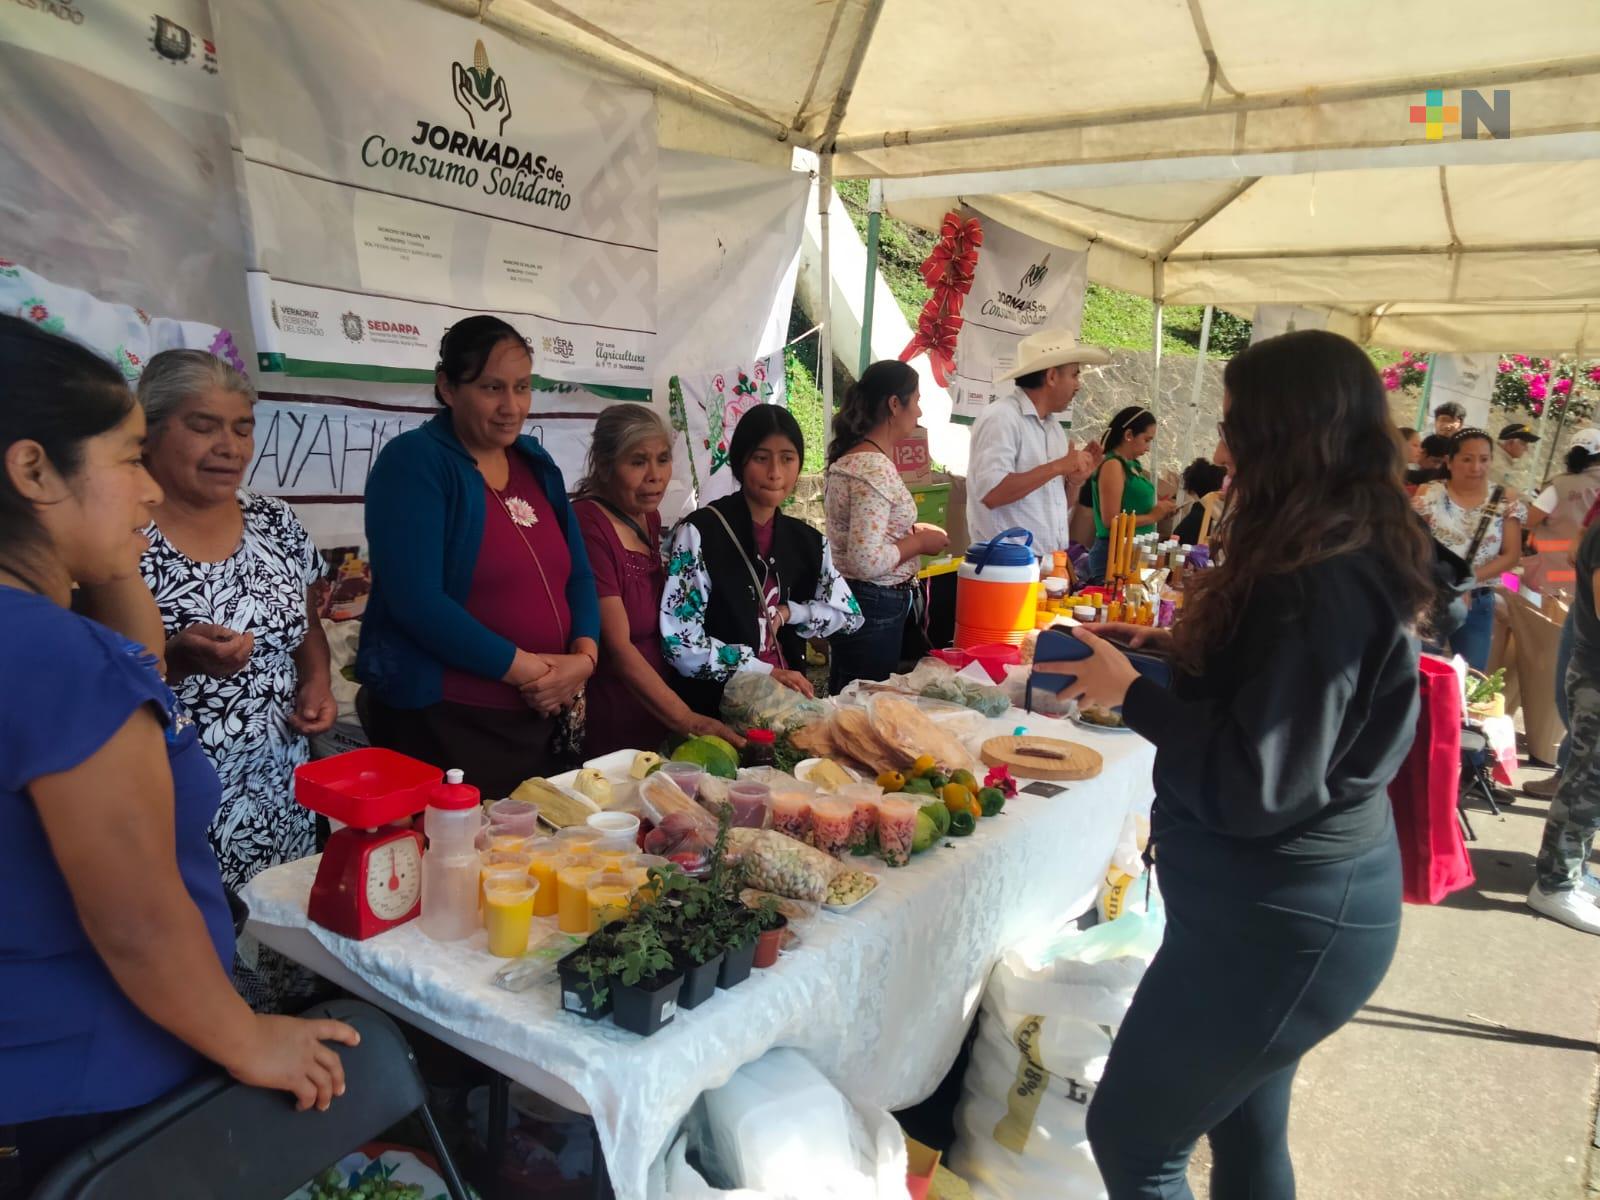 En Xalapa, cada mes se realizarán Jornadas de Consumo Solidario para productores locales